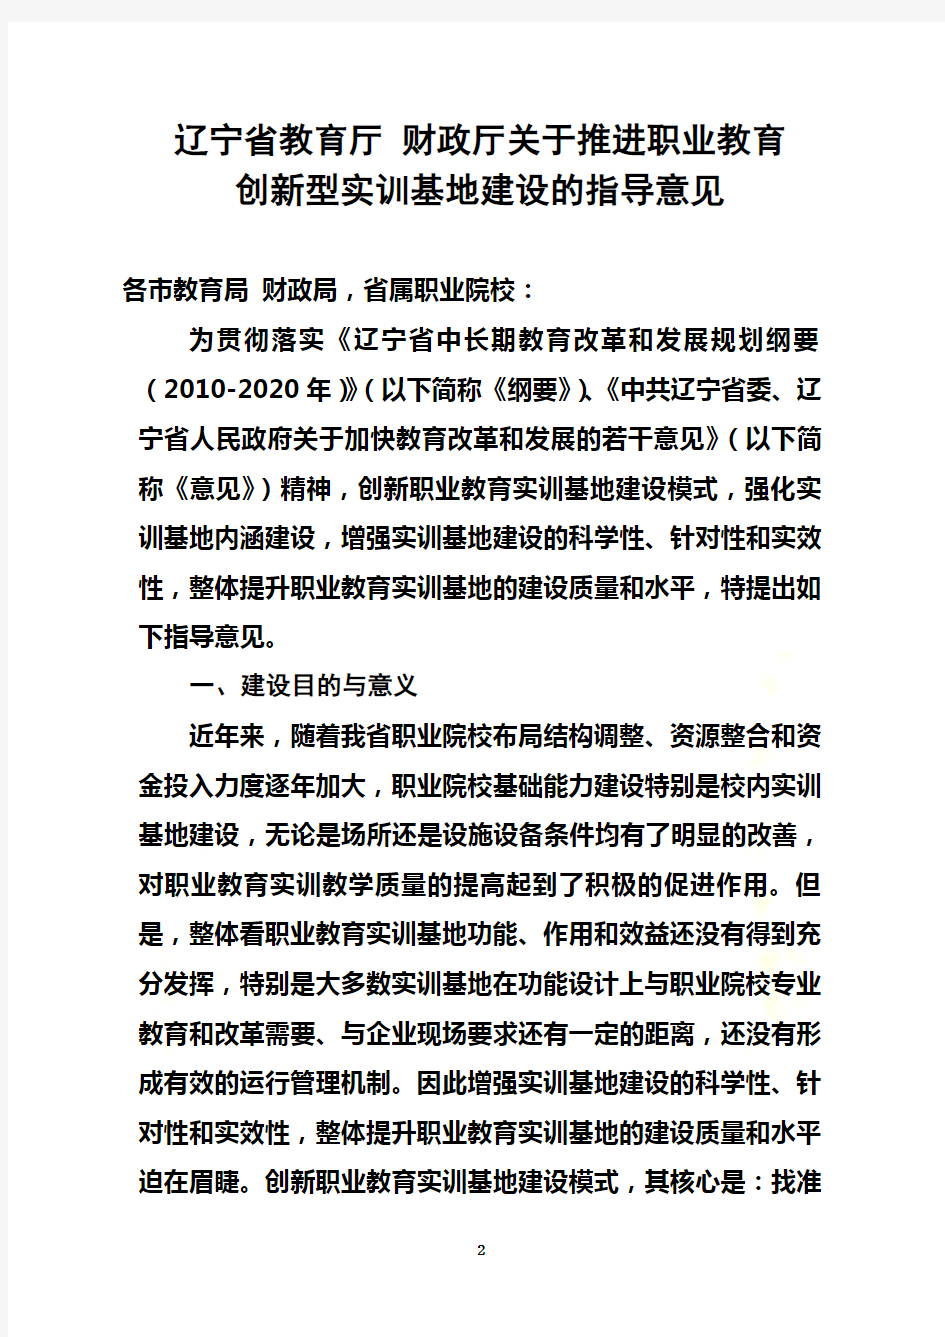 (2-1)辽宁省职业教育创新型实训基地建设指导意见(会签稿)